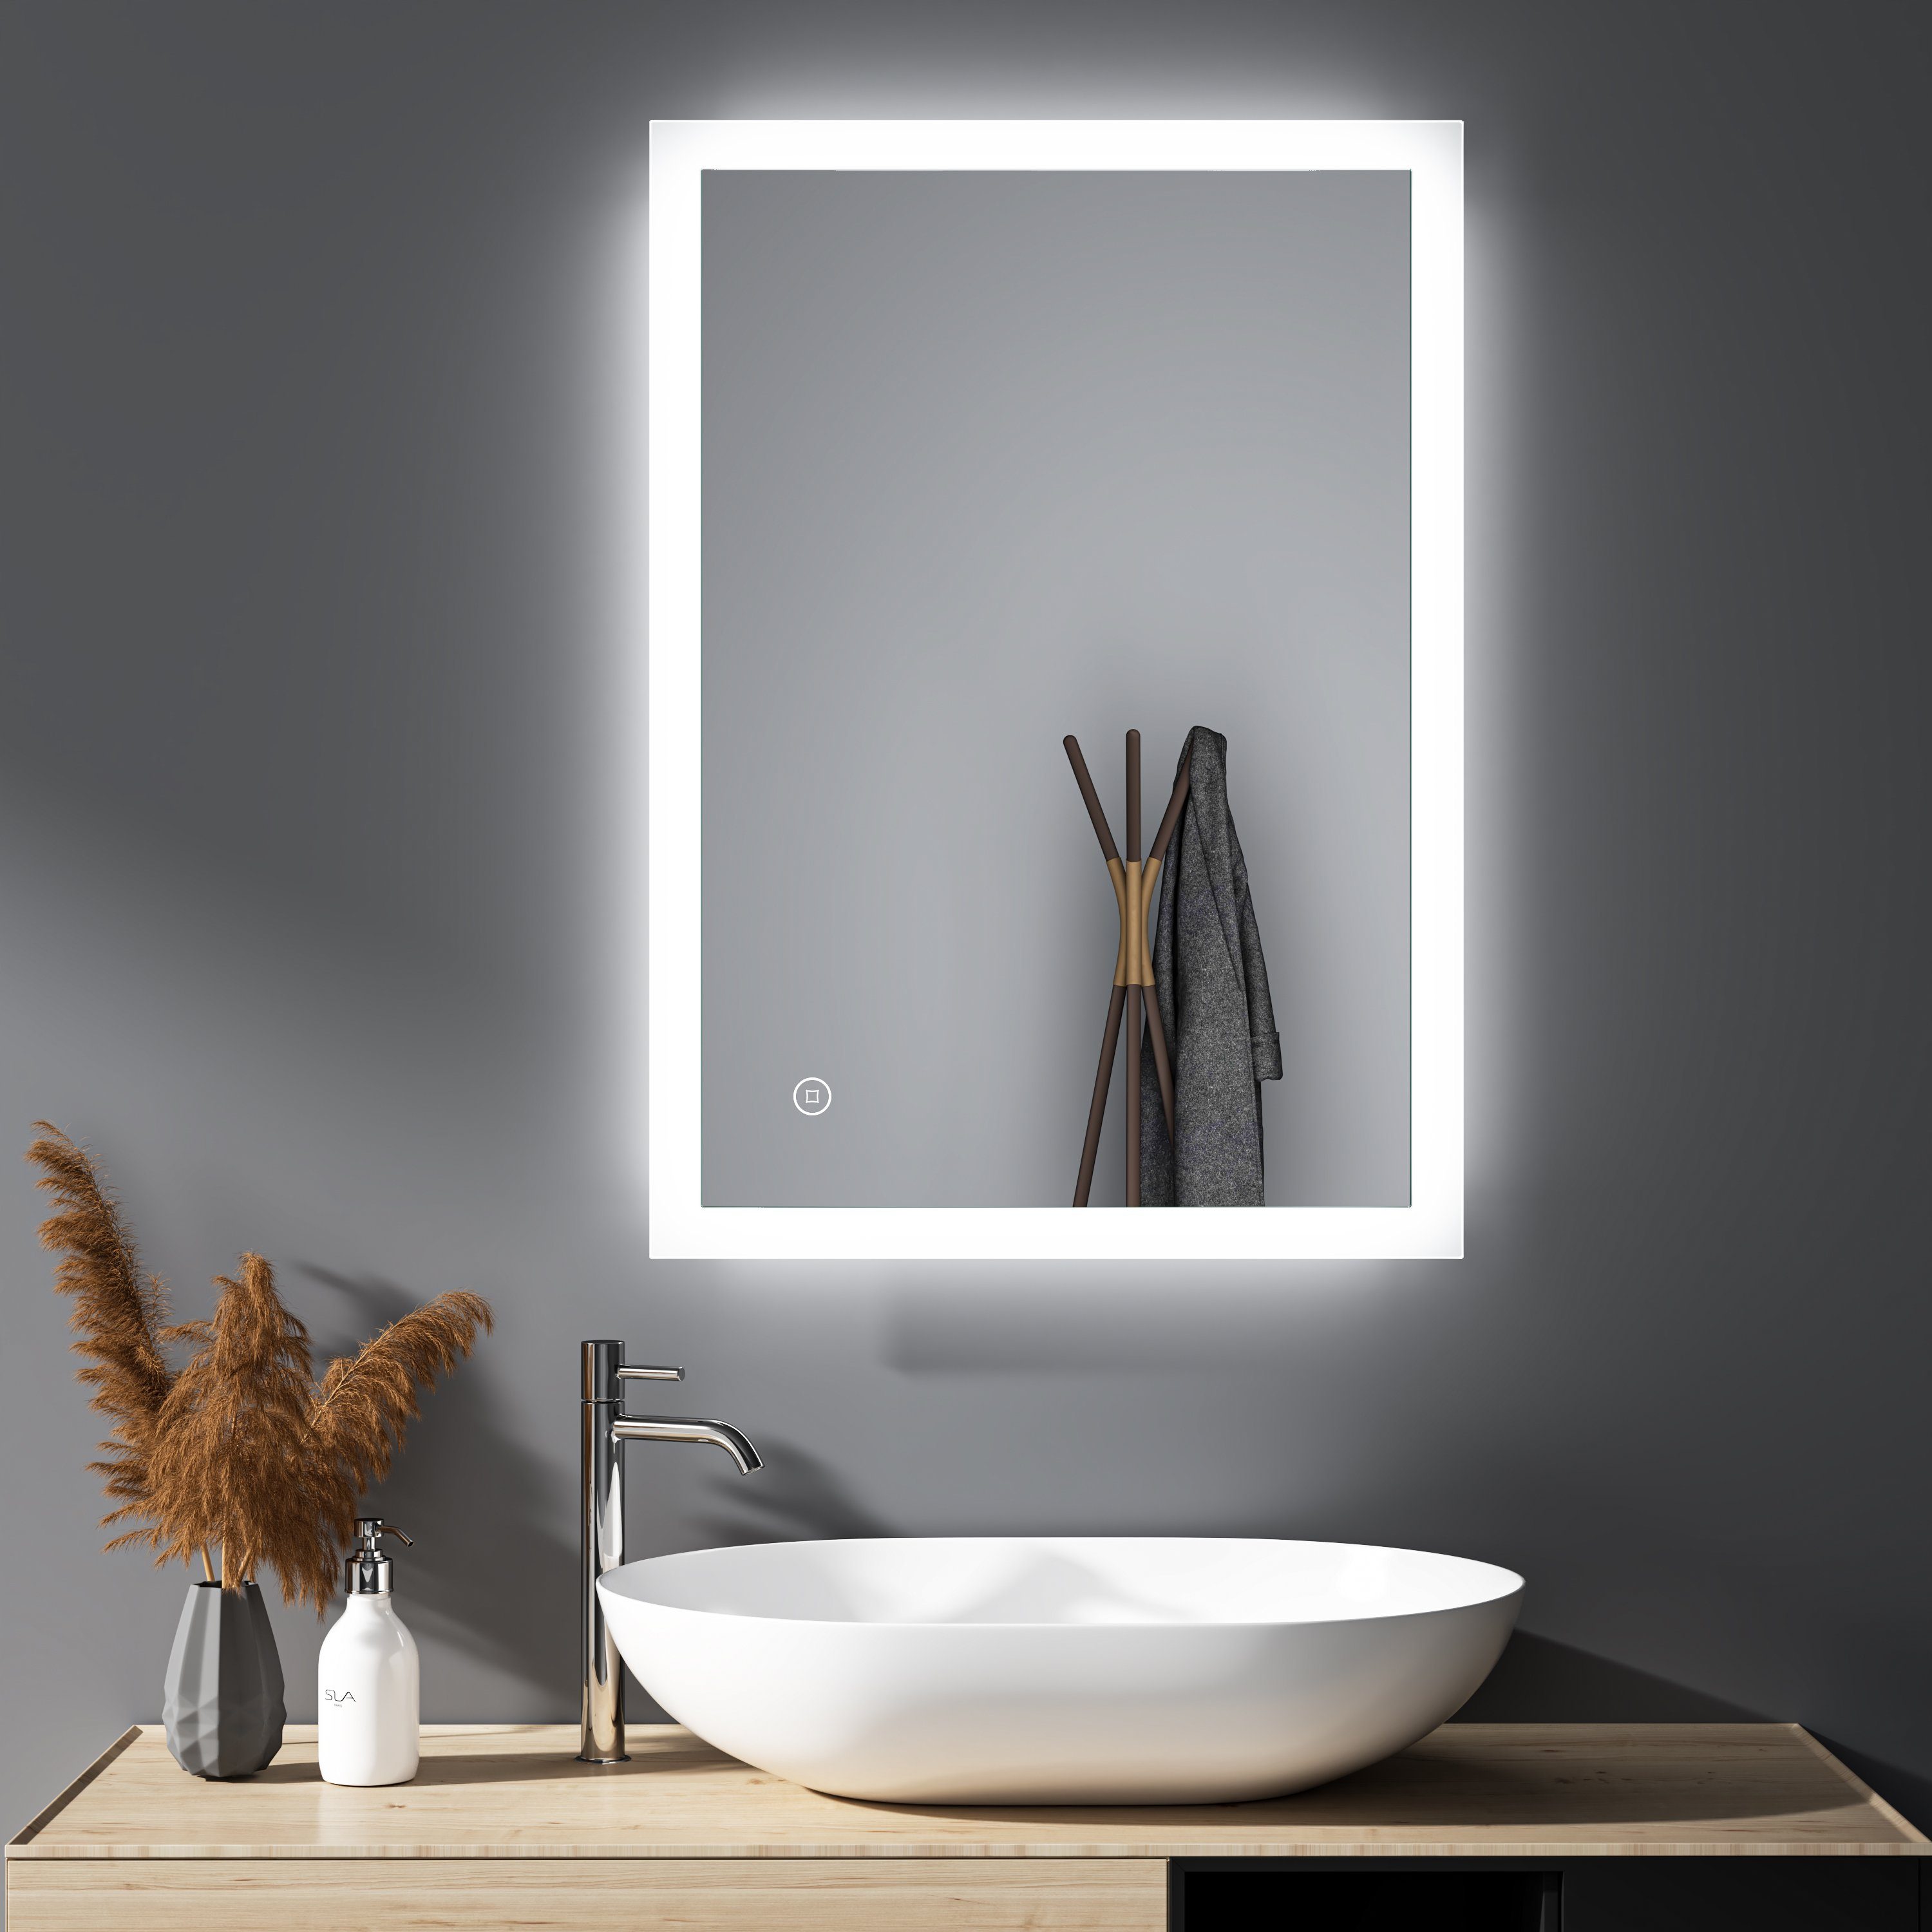 GOEZES Badspiegel Wandspiegel Badezimmerspiegel Led Spiegel Bad mit  Beleuchtung Touch (Spiegel Led badezimmer, Lichtspiegel, Speicherfunktion,  3Lichtfarben, Helligkeit einstellbar), energiesparender, IP44